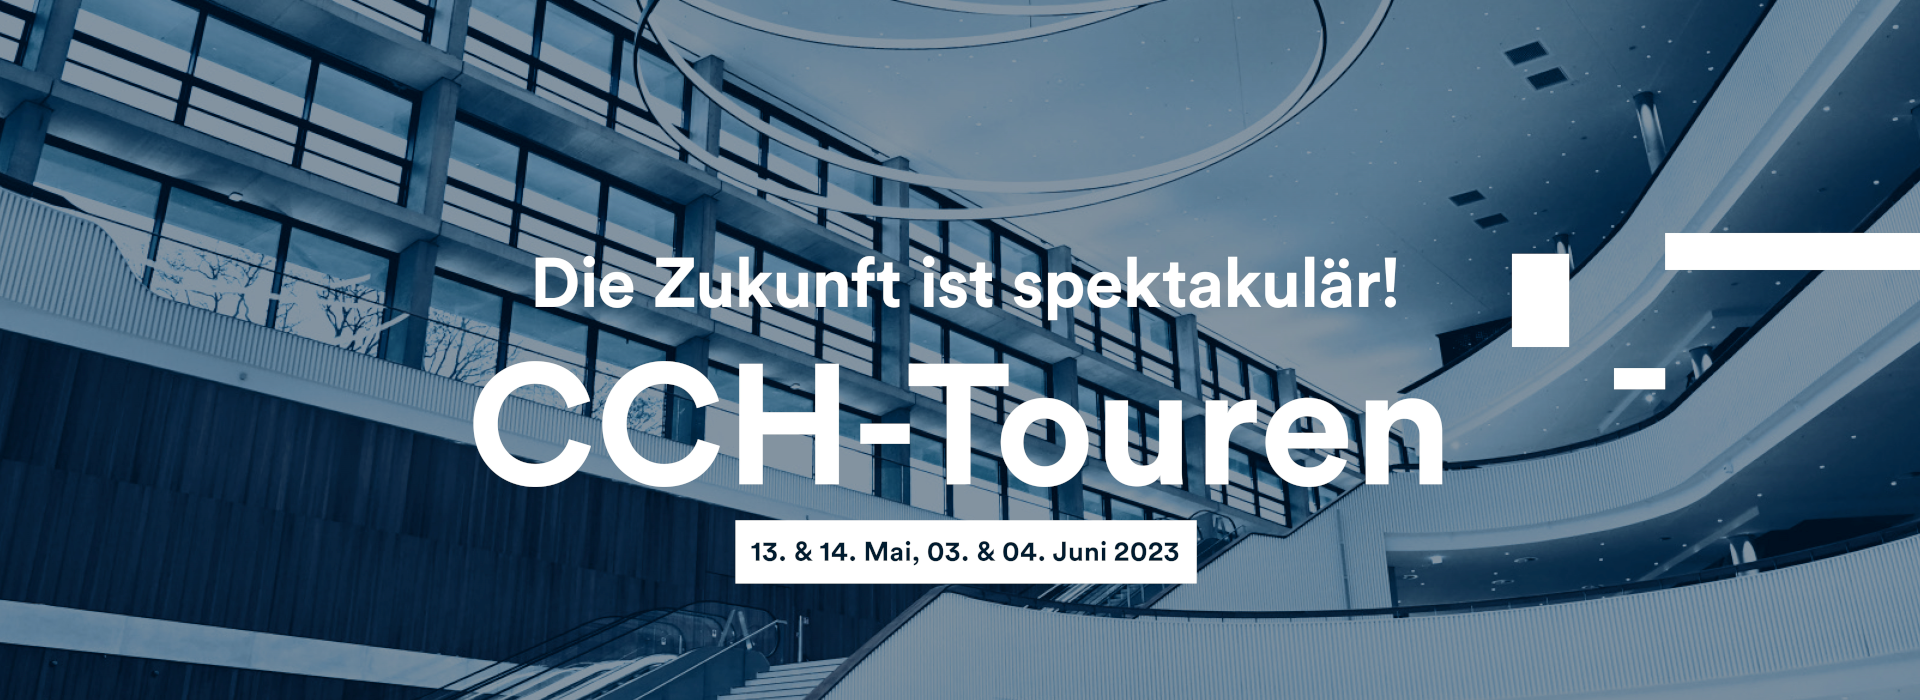 CCH - Touren 2023 -  13. & 14. Mai 2023, 03. & 04. Juni 2023